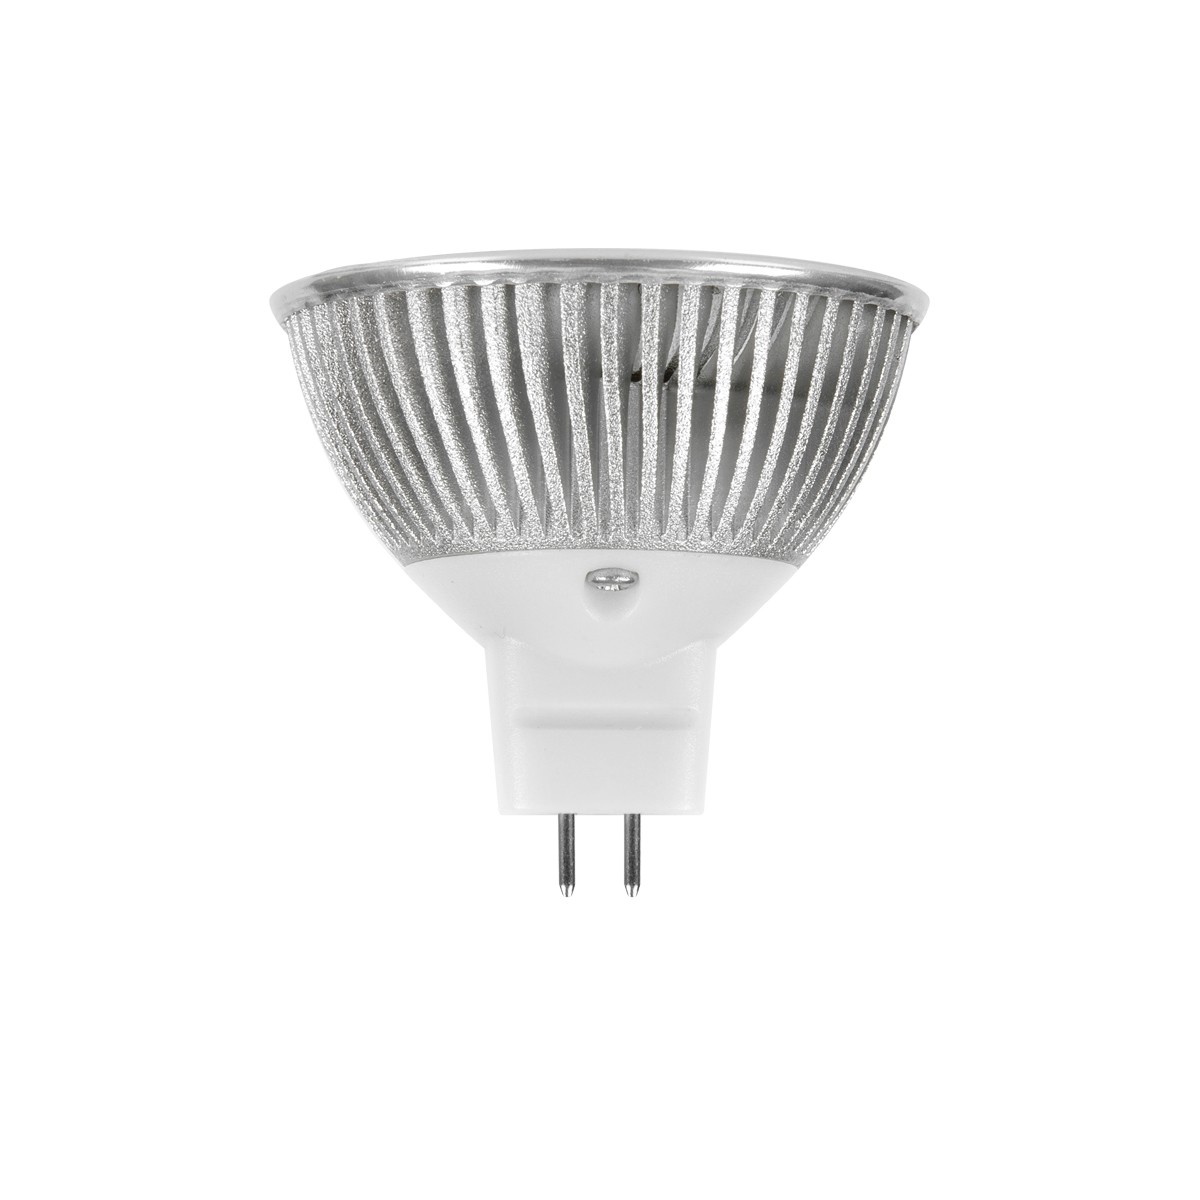 ΛΑΜΠΑ LED SV-3X2 MR16/6W/2700K (MIRROR)         VK/05001/D/W/20